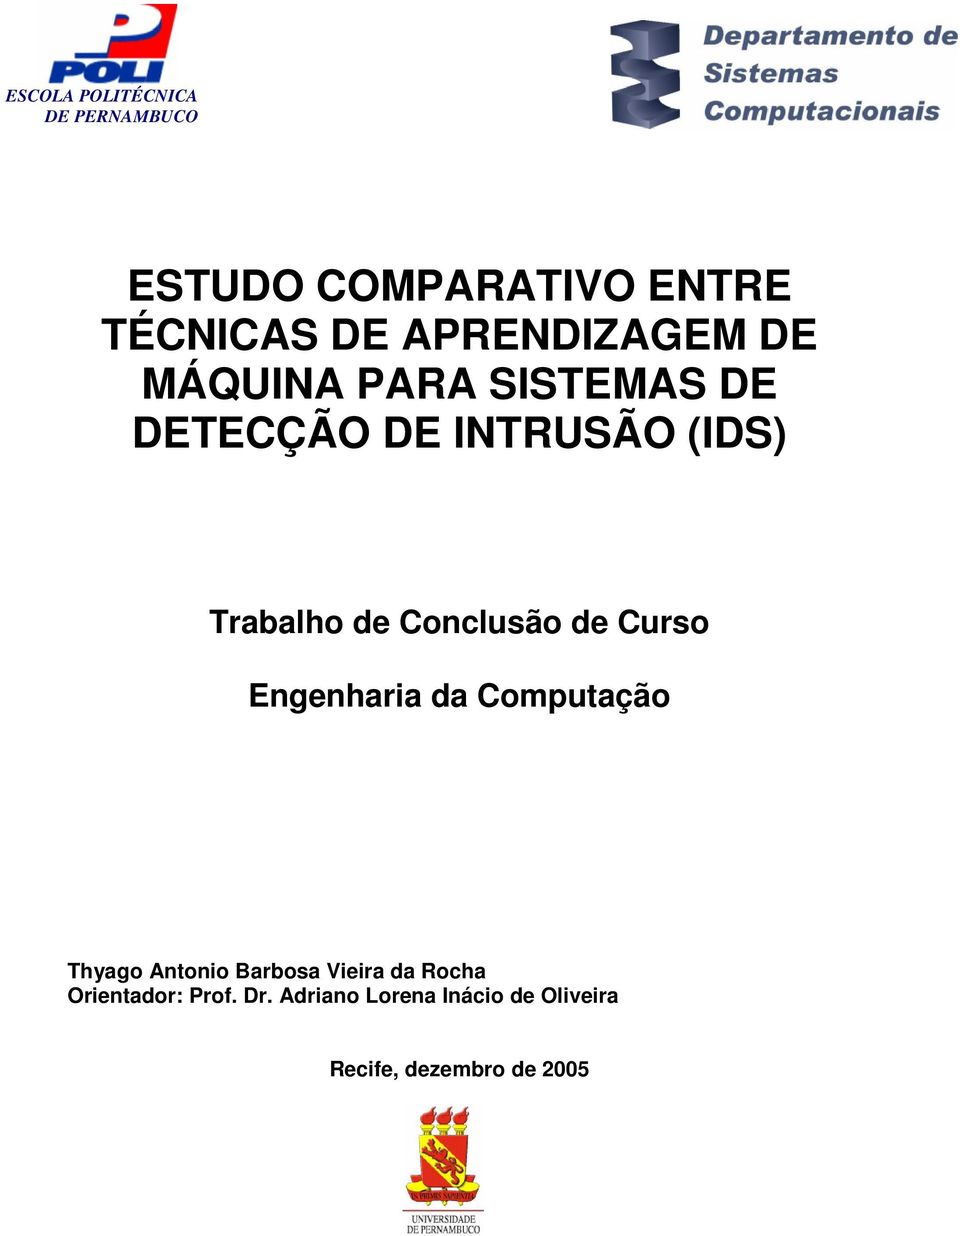 Engenharia da Computação Thyago Antonio Barbosa Vieira da Rocha